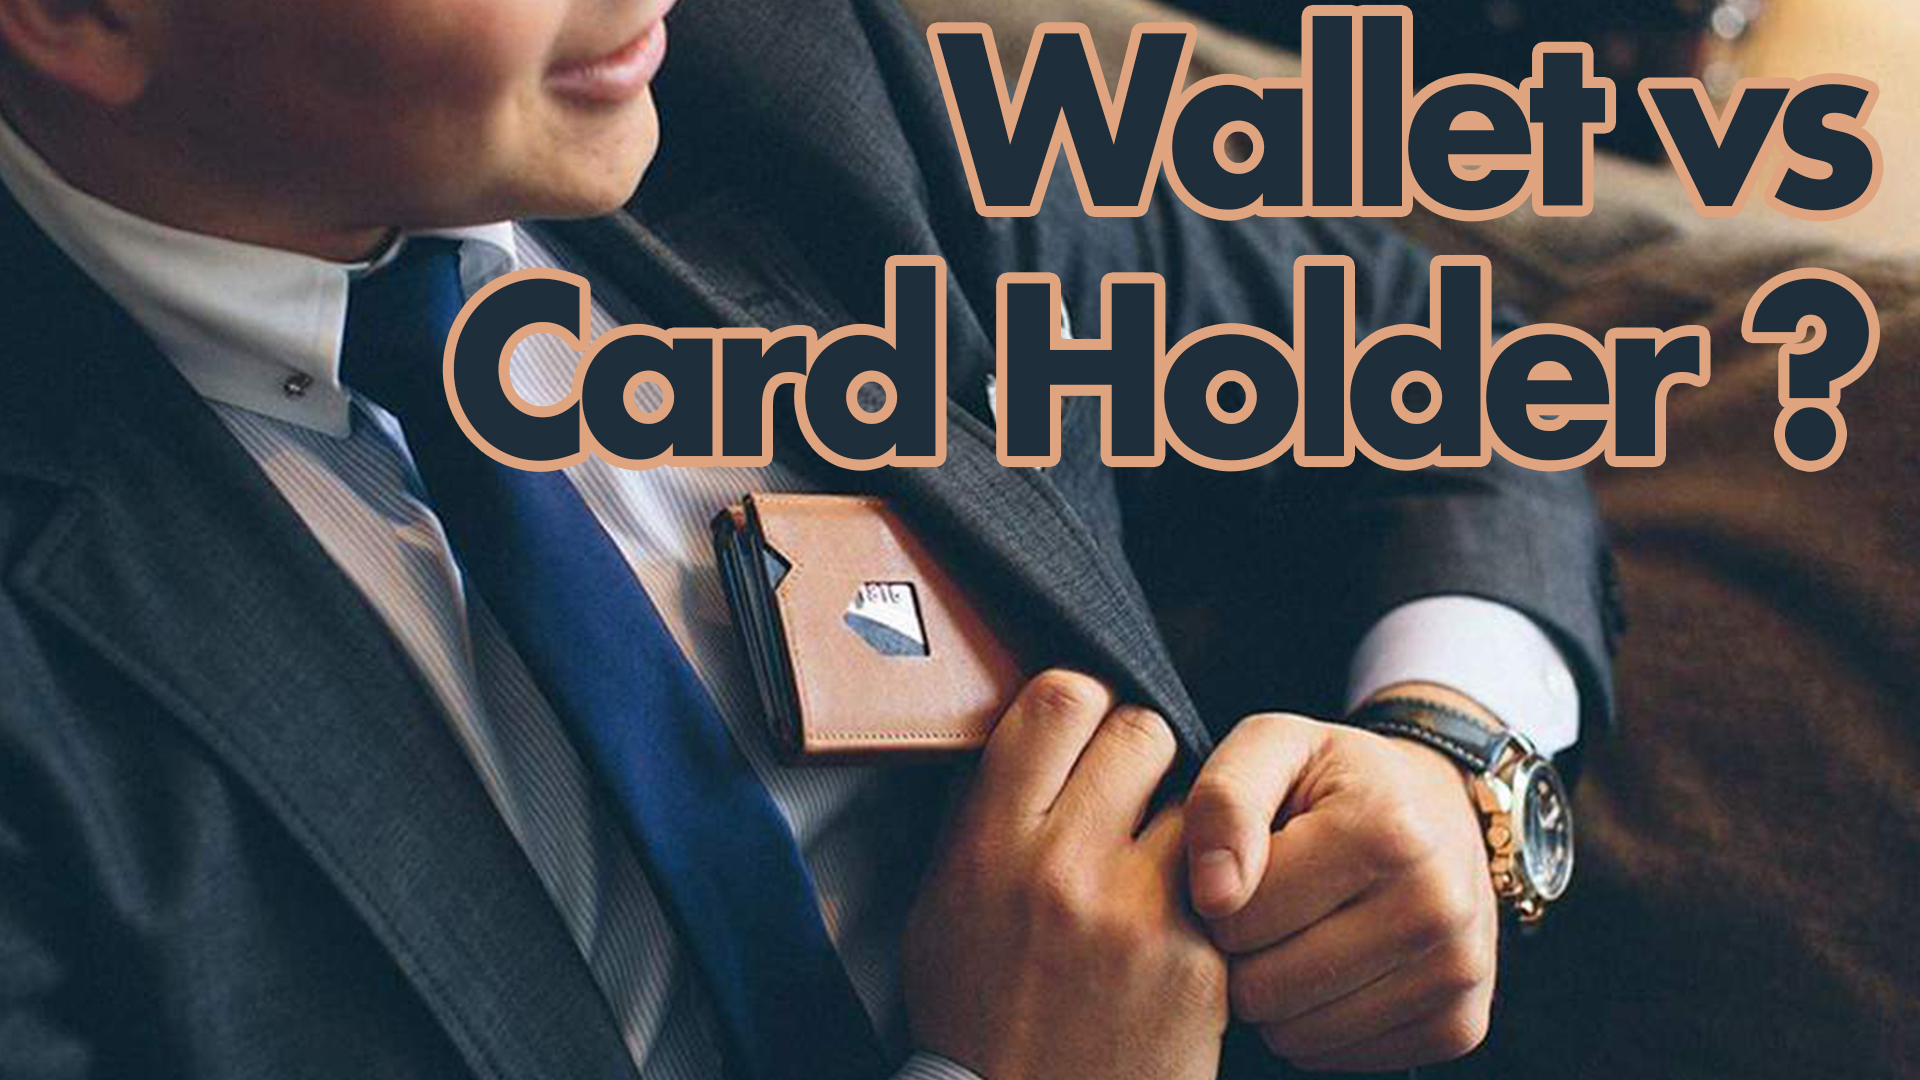 Wallet vs Card Holder? - JLAUTHENTICS